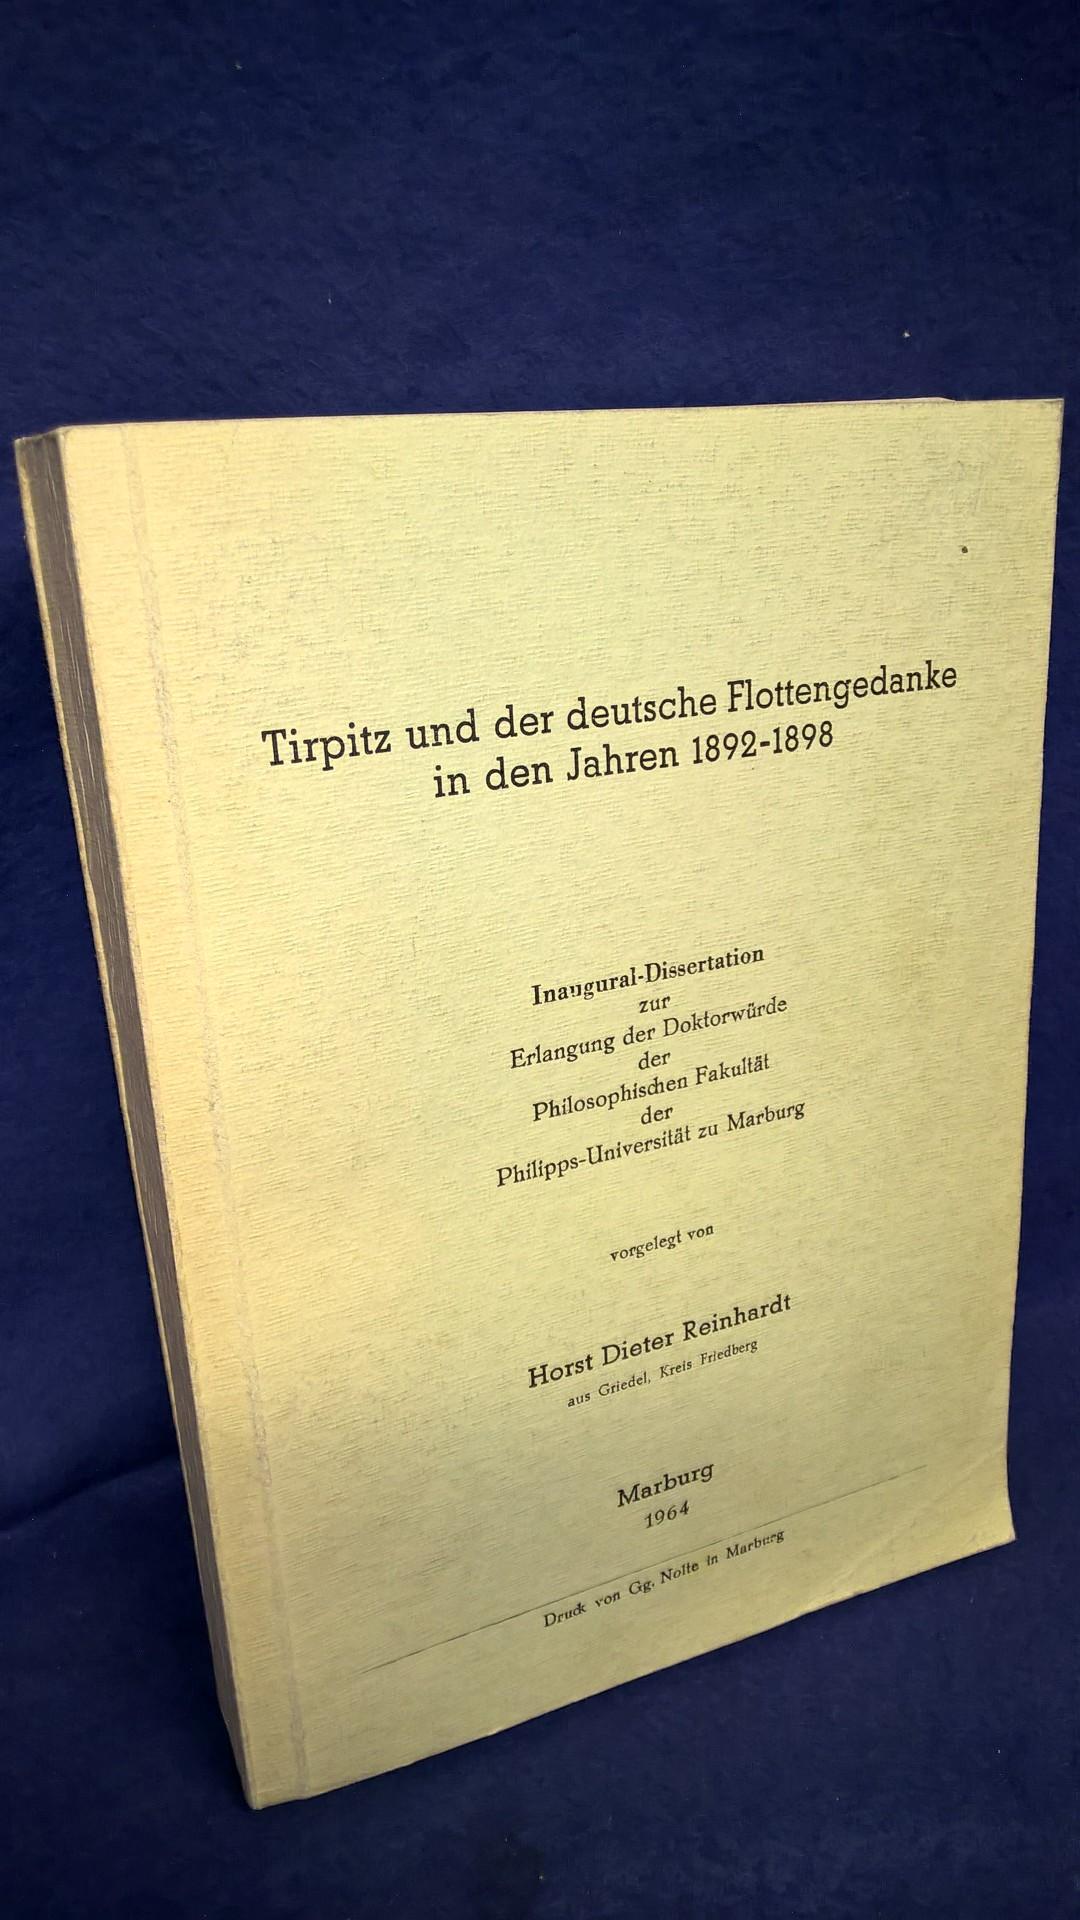 Tirpitz und der deutsche Flottengedanke in den Jahren 1892-1898. Inaugural-Dissertation! Selten!